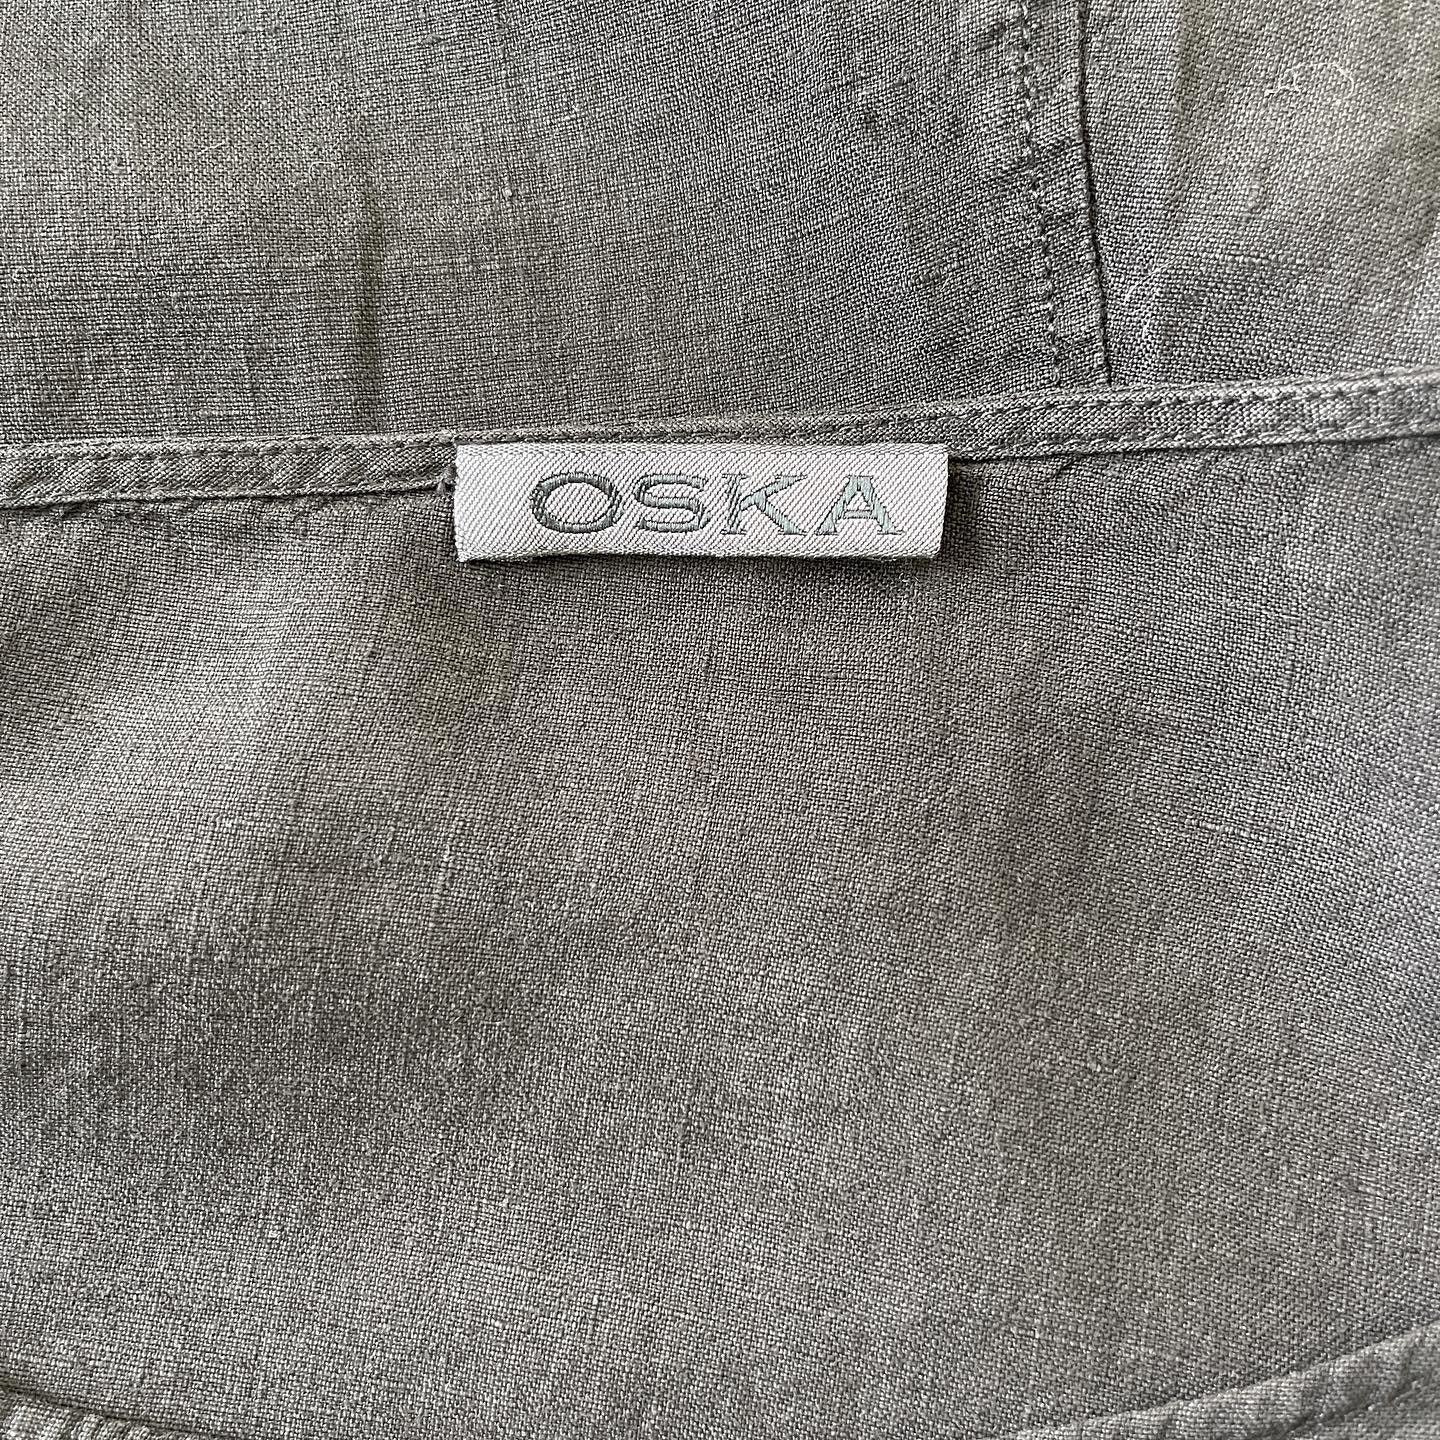 OSKA - OSKA Dress - AVVIIVVA.COM